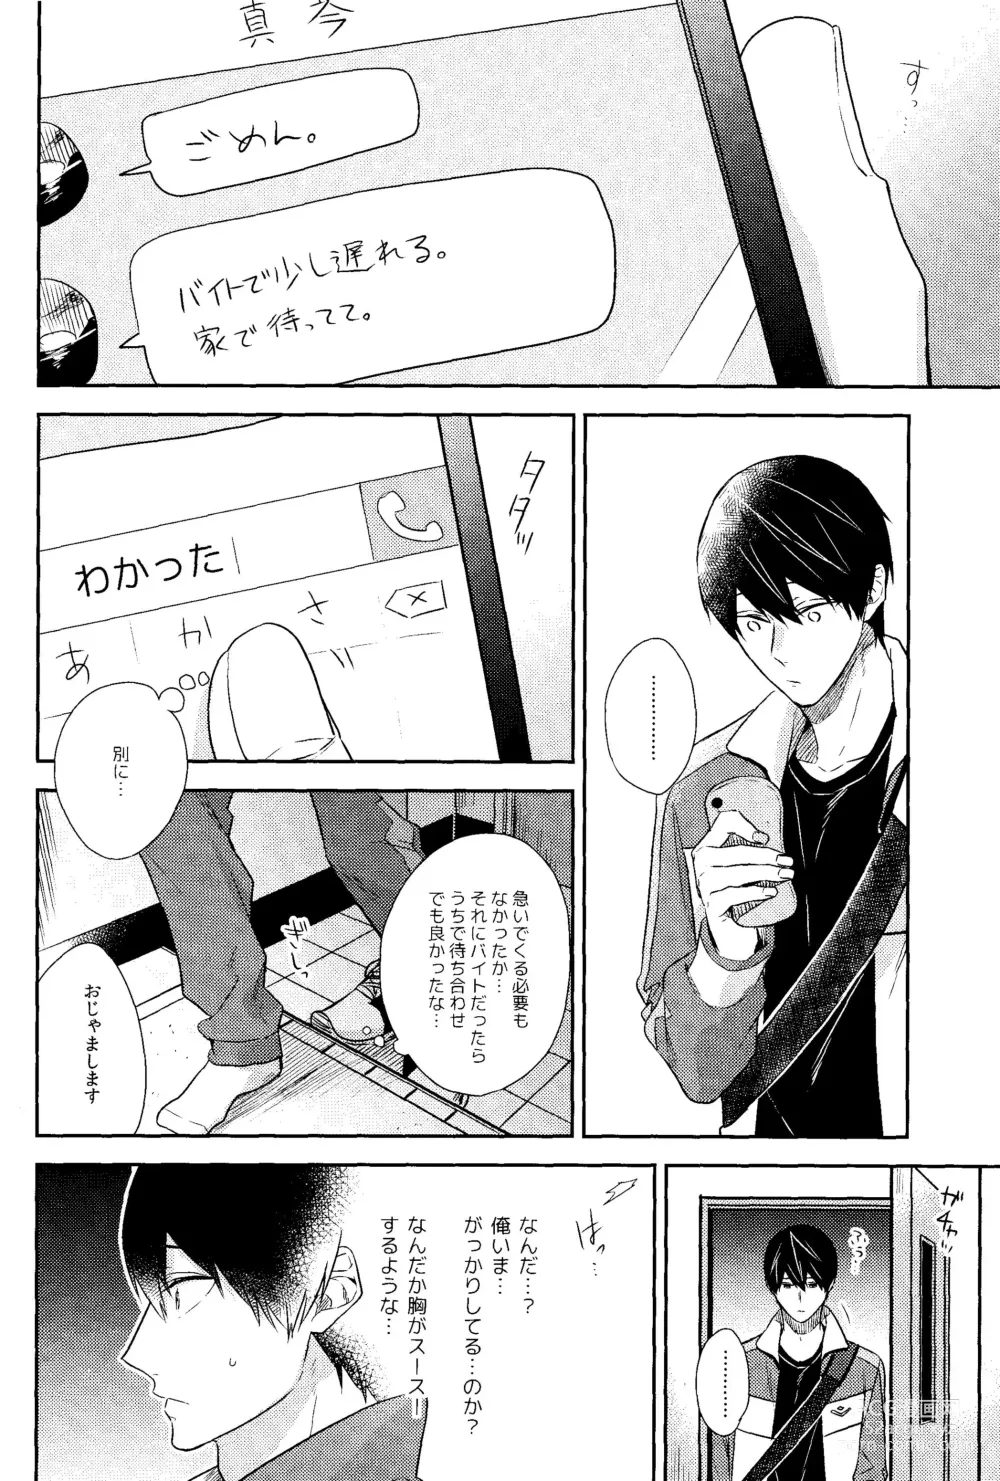 Page 7 of doujinshi Kare Knit to Makoto to Haruka.